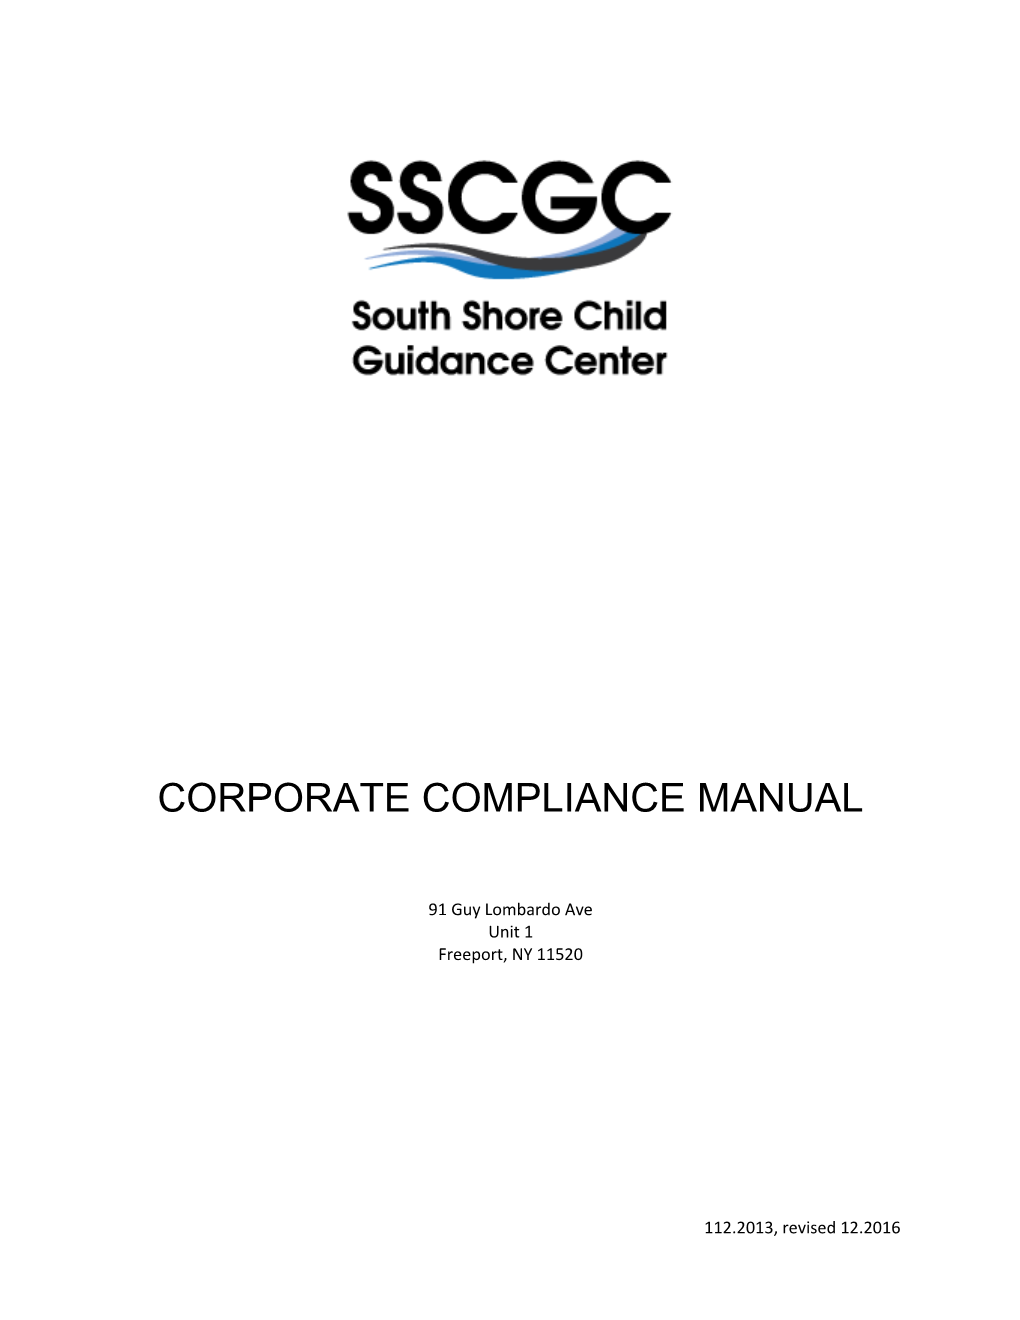 Corporate Compliance Manual